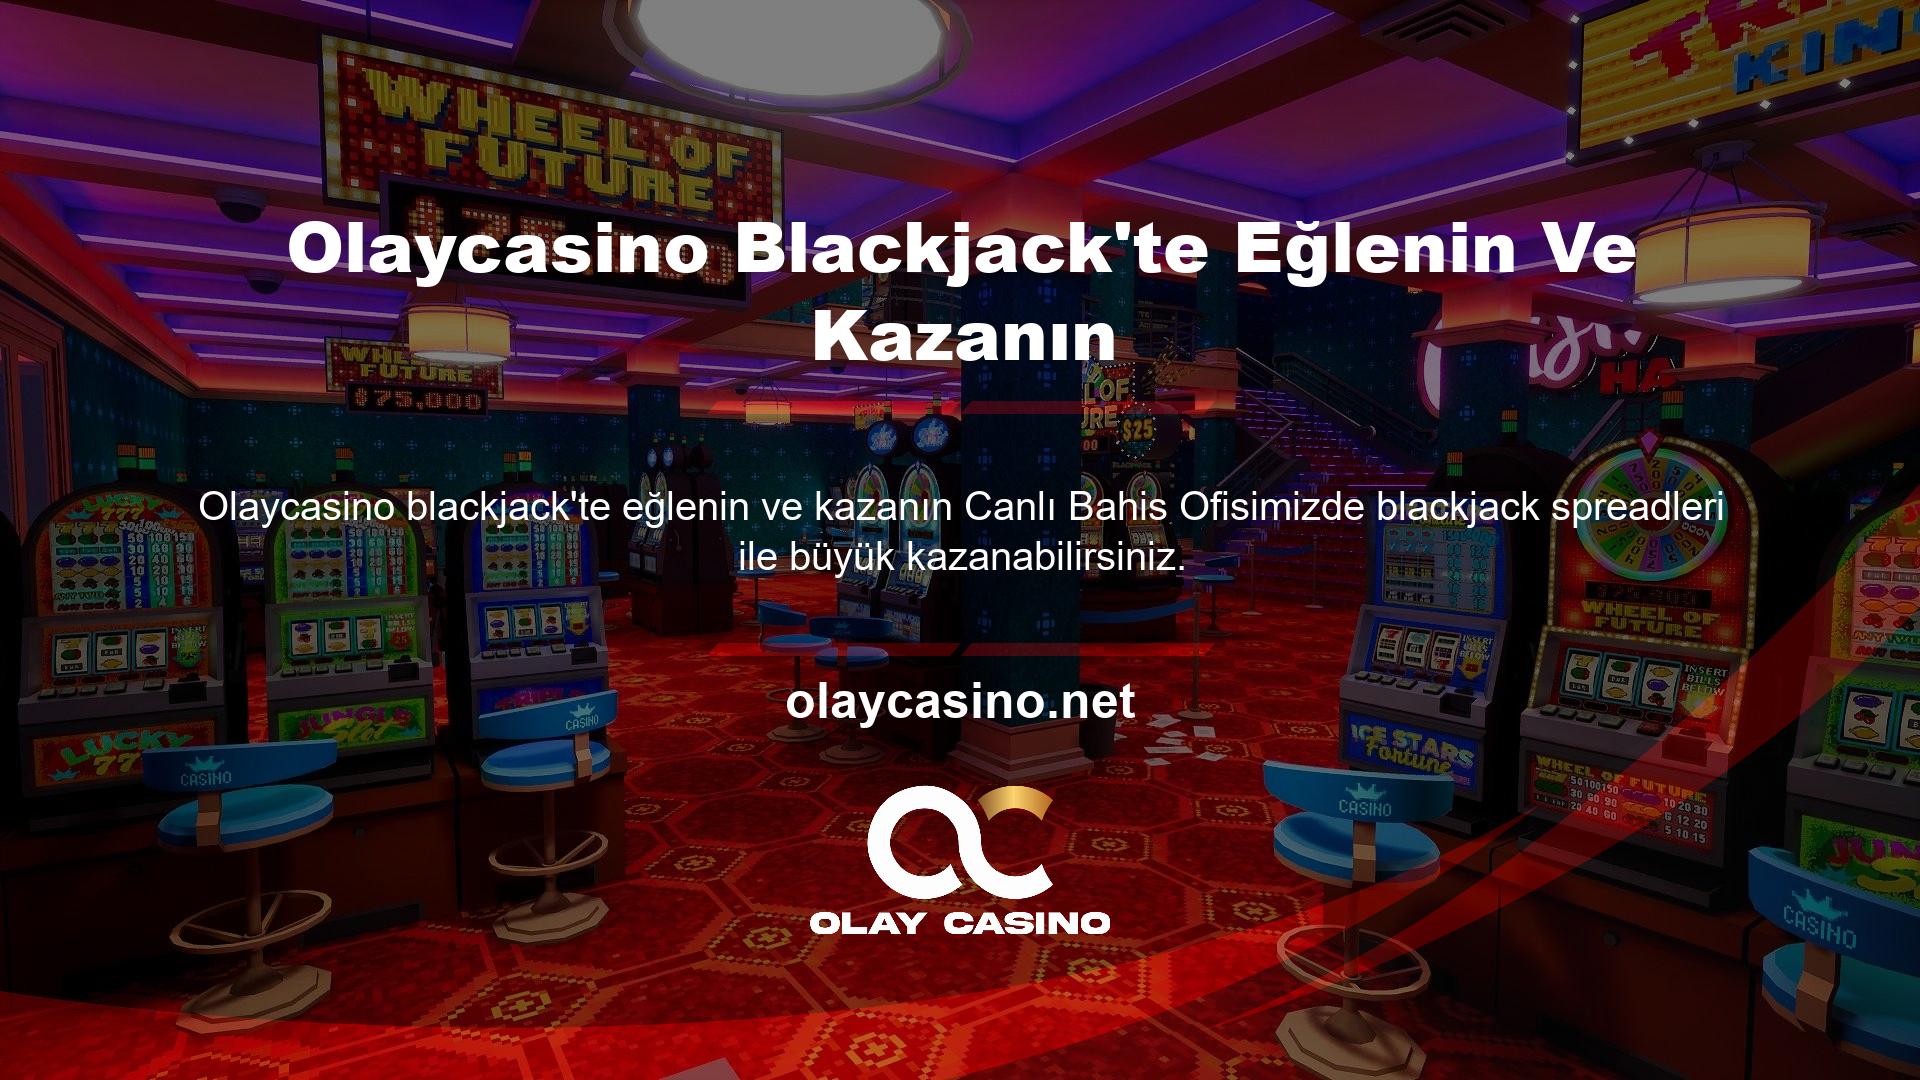 Olaycasino Blackjack'te Eğlenin Ve Kazanın